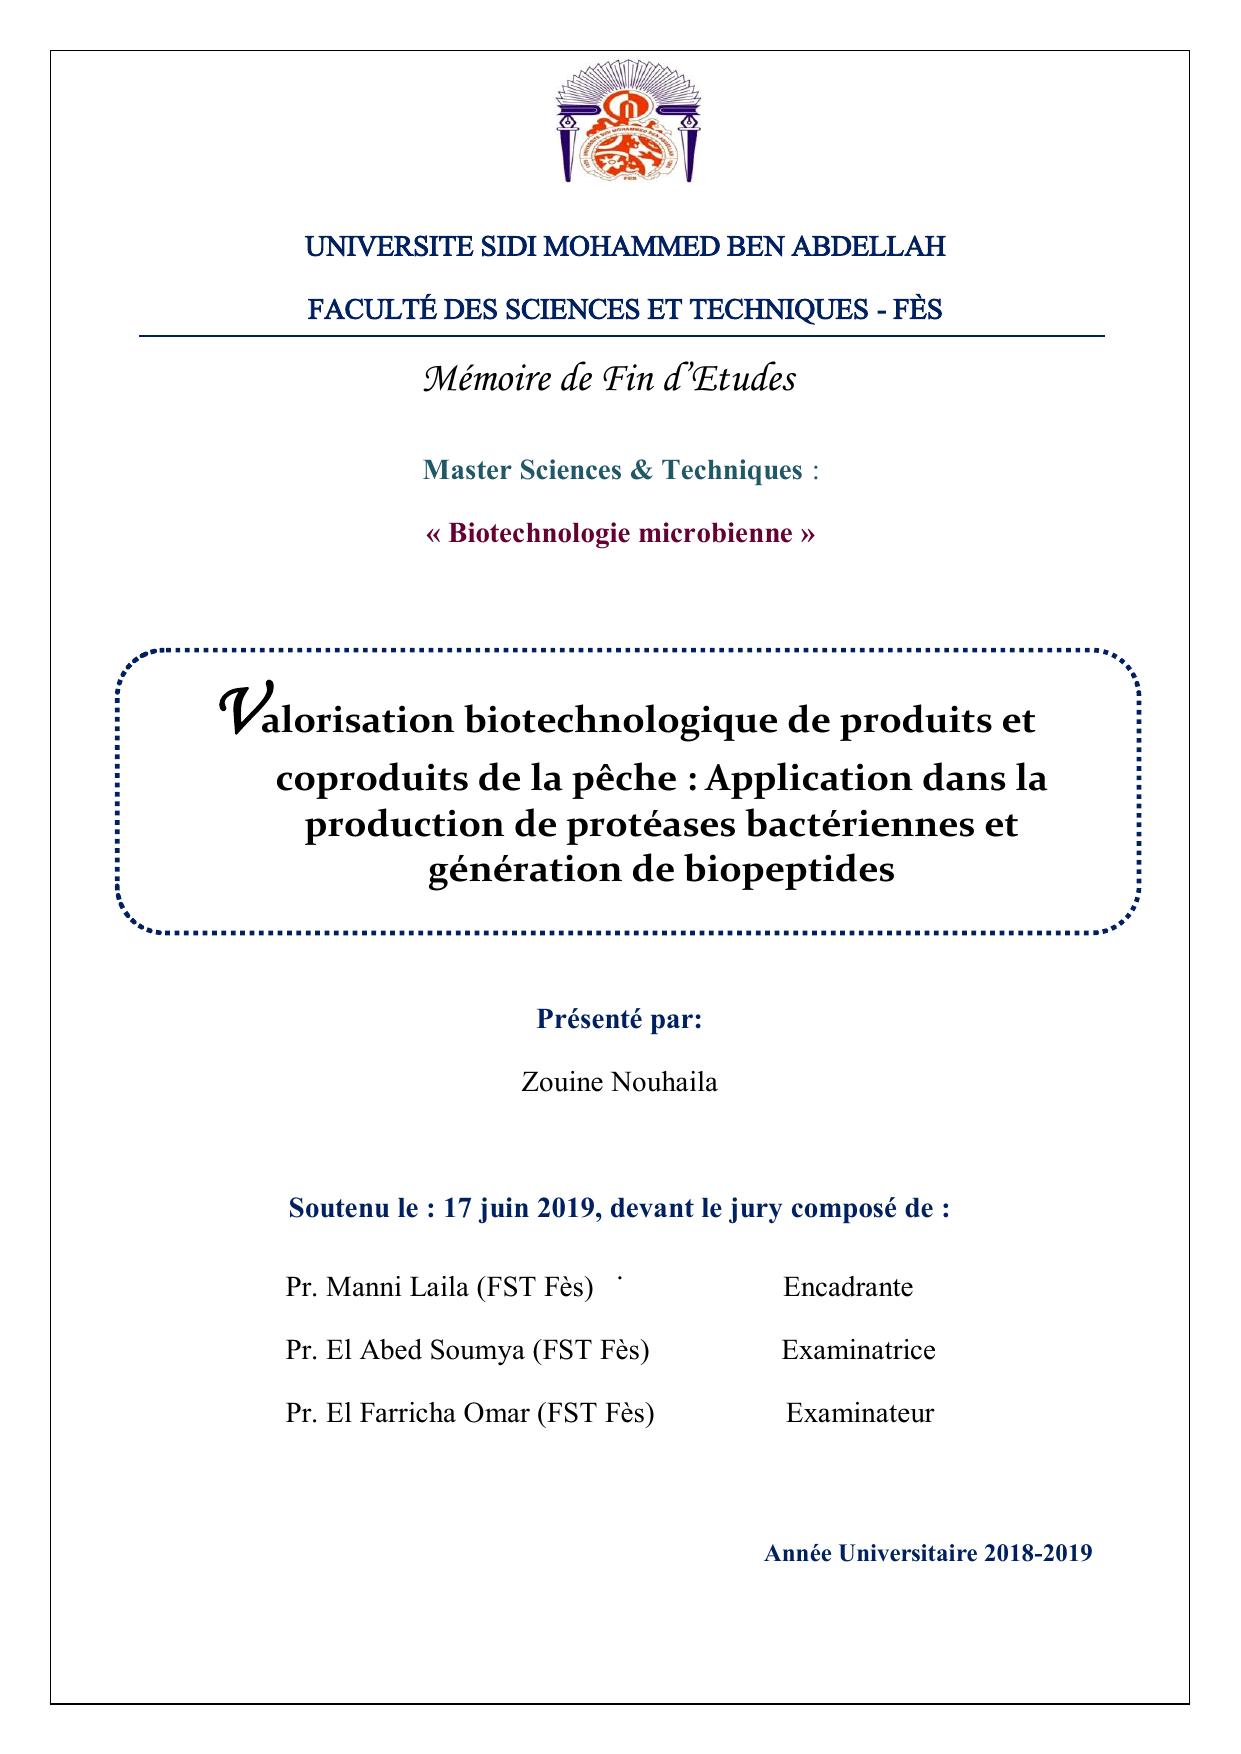 Valorisation biotechnologique de produits et coproduits de la pêche : Application dans la production de protéases bactériennes et génération de biopeptides